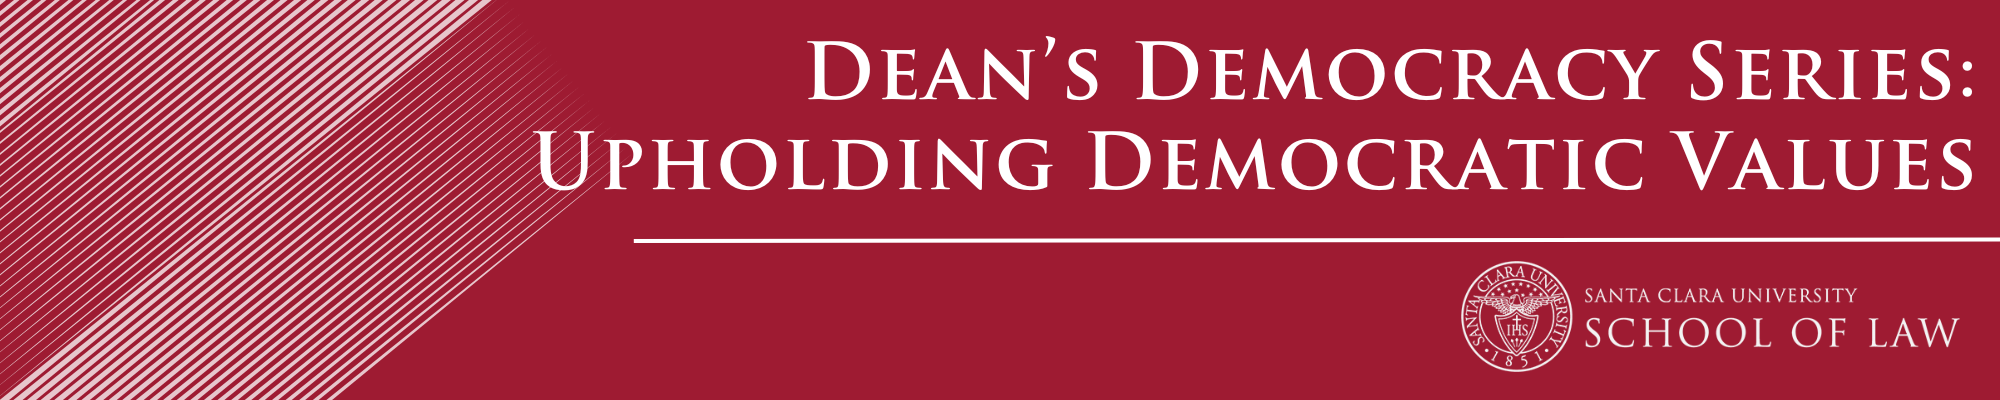 Dean's Democracy Series Banner